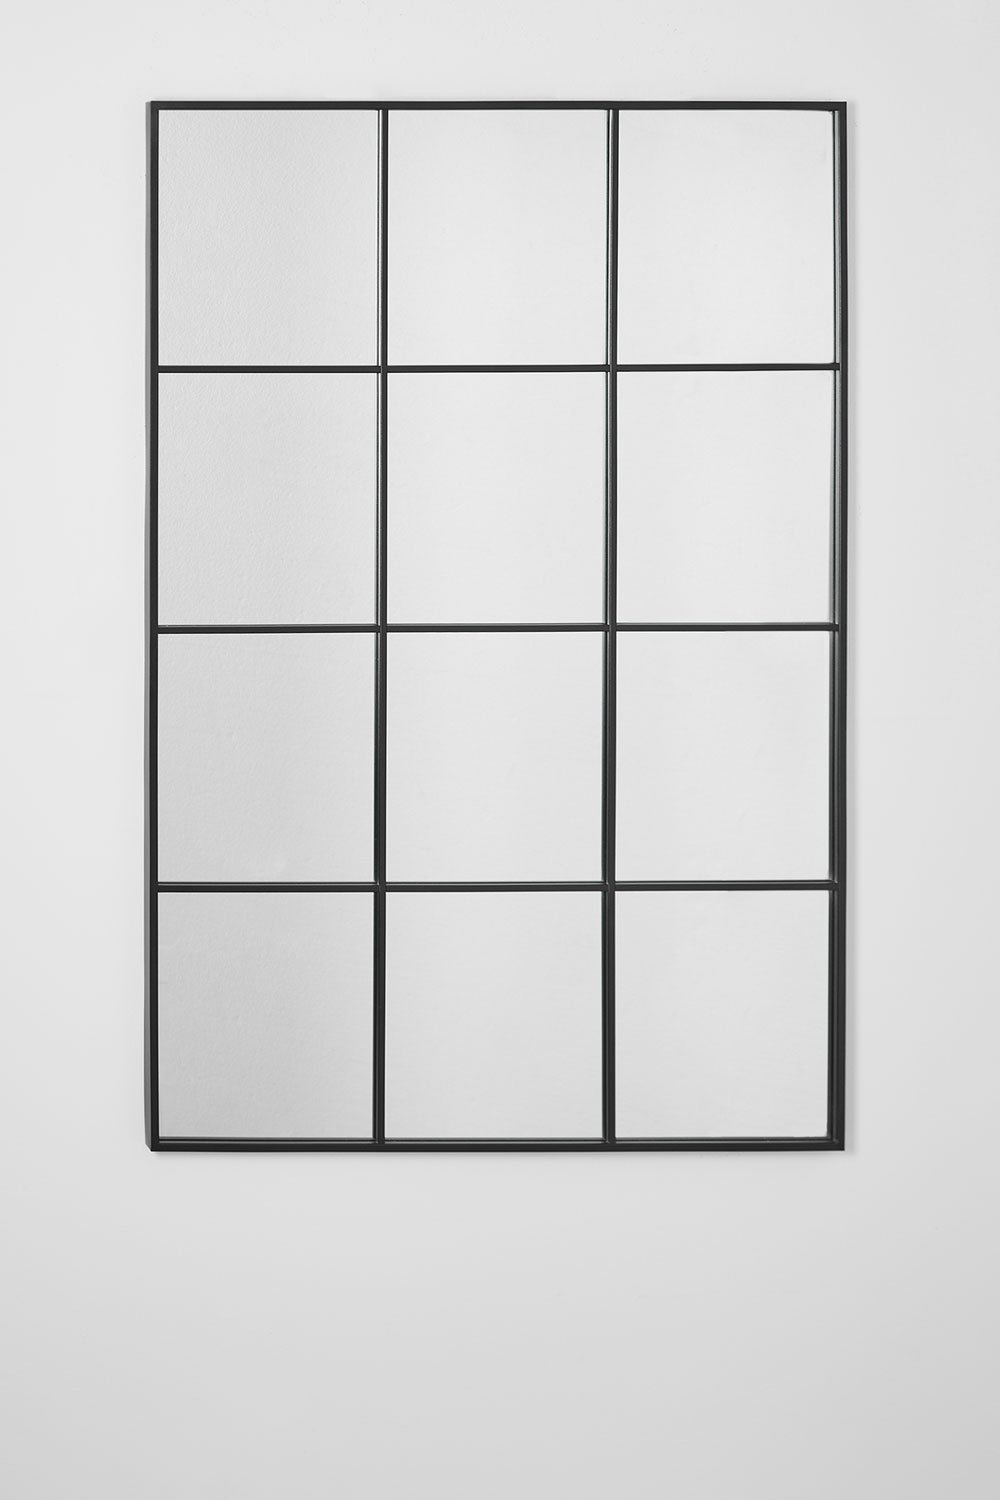 Rechthoekige metalen wandspiegel (80x120 cm) Niember, galerij beeld 2